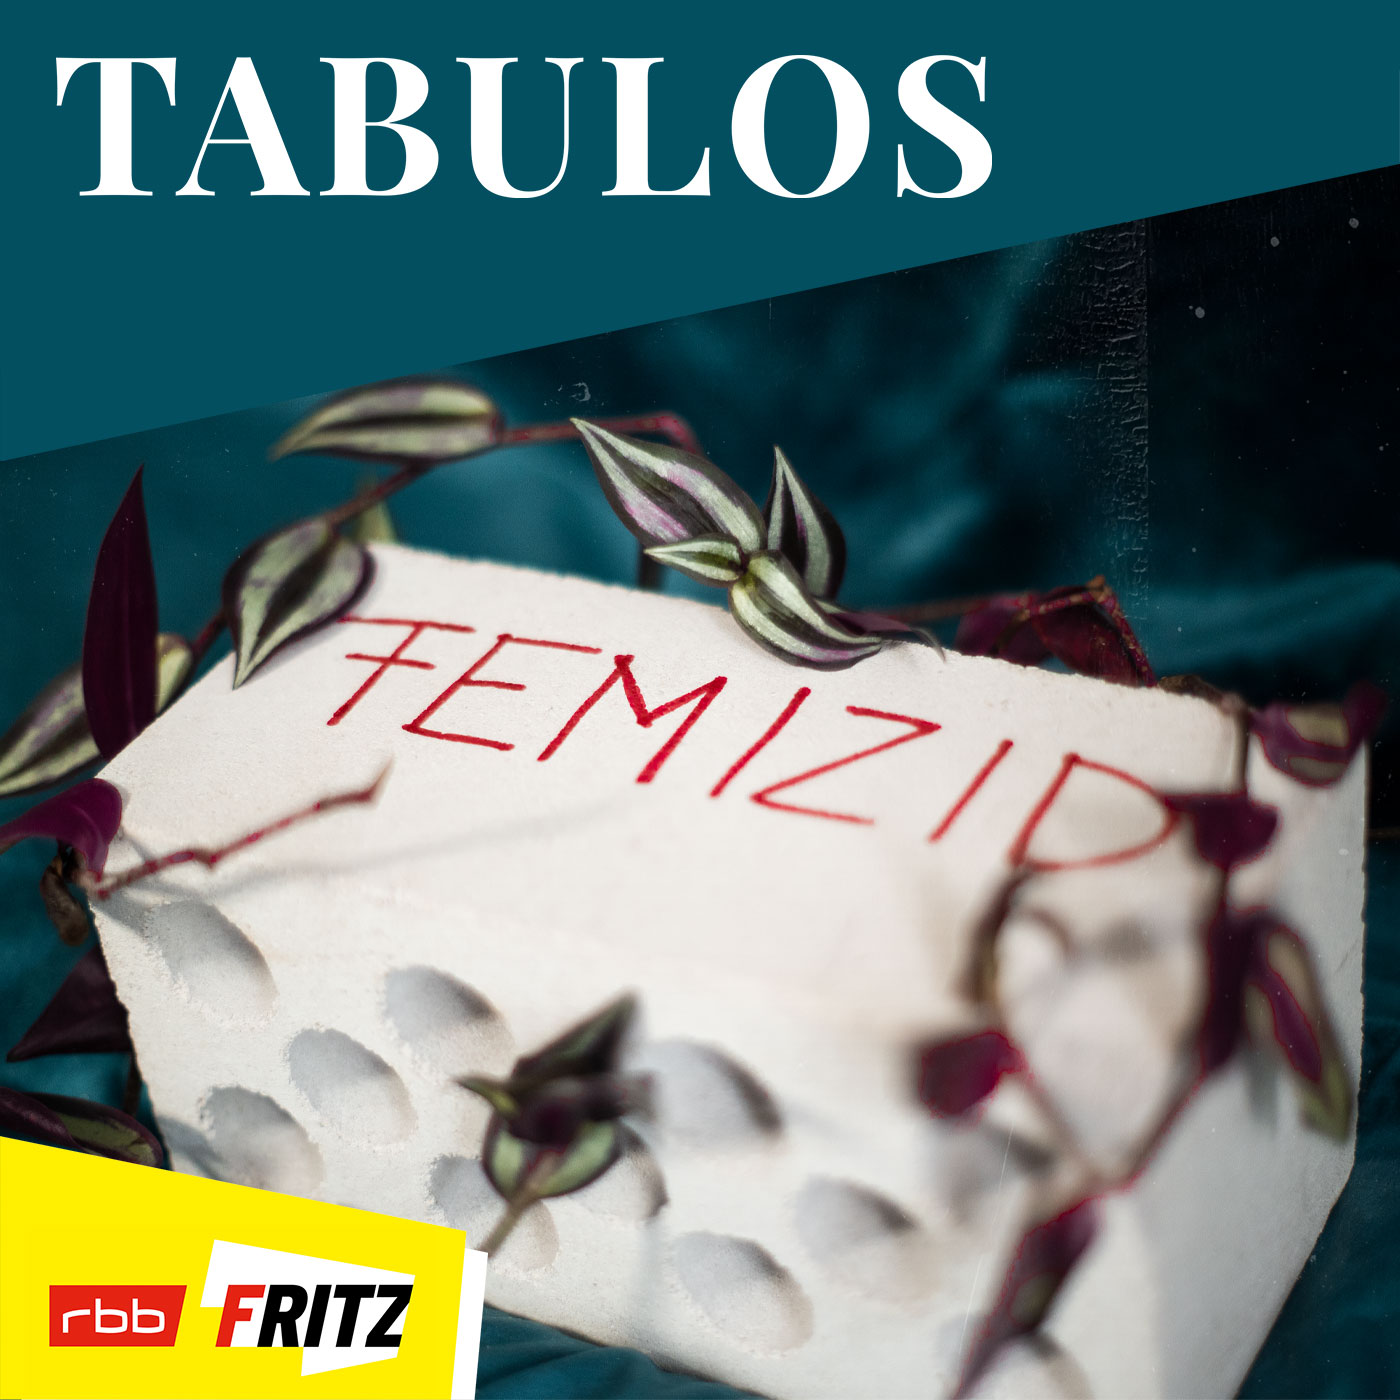 Femizid – Henriette hat einen Mordversuch ihres Partners überlebt